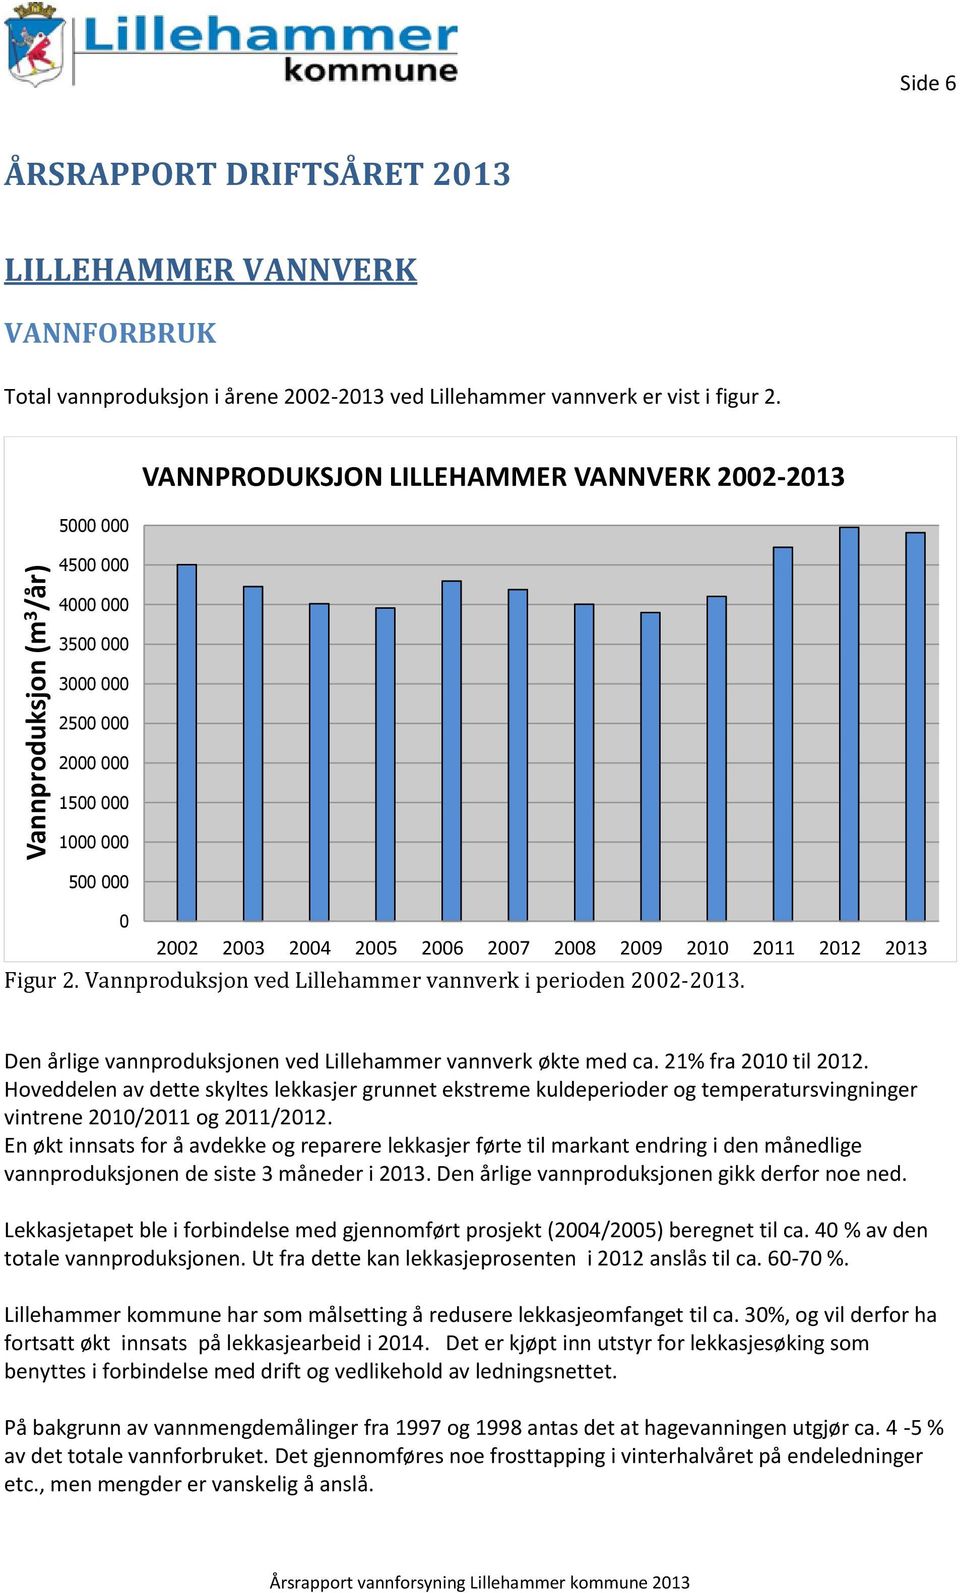 Figur 2. Vannproduksjon ved Lillehammer vannverk i perioden 2002-2013. Den årlige vannproduksjonen ved Lillehammer vannverk økte med ca. 21% fra 2010 til 2012.